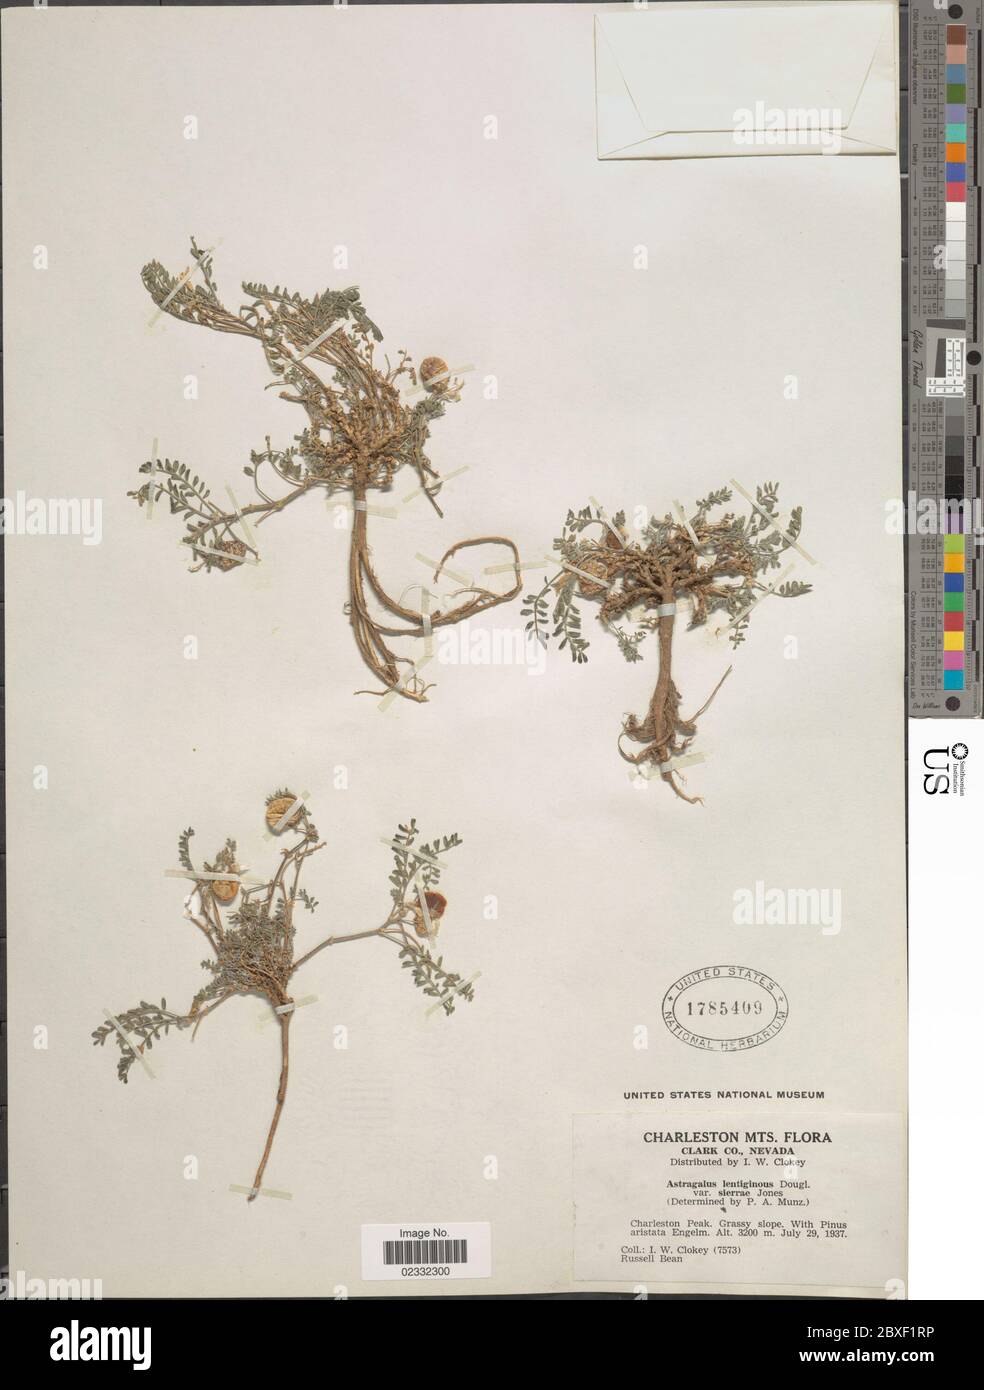 Astragalus lentiginosus var sierrae ME Jones Astragalus lentiginosus var sierrae ME Jones. Stock Photo